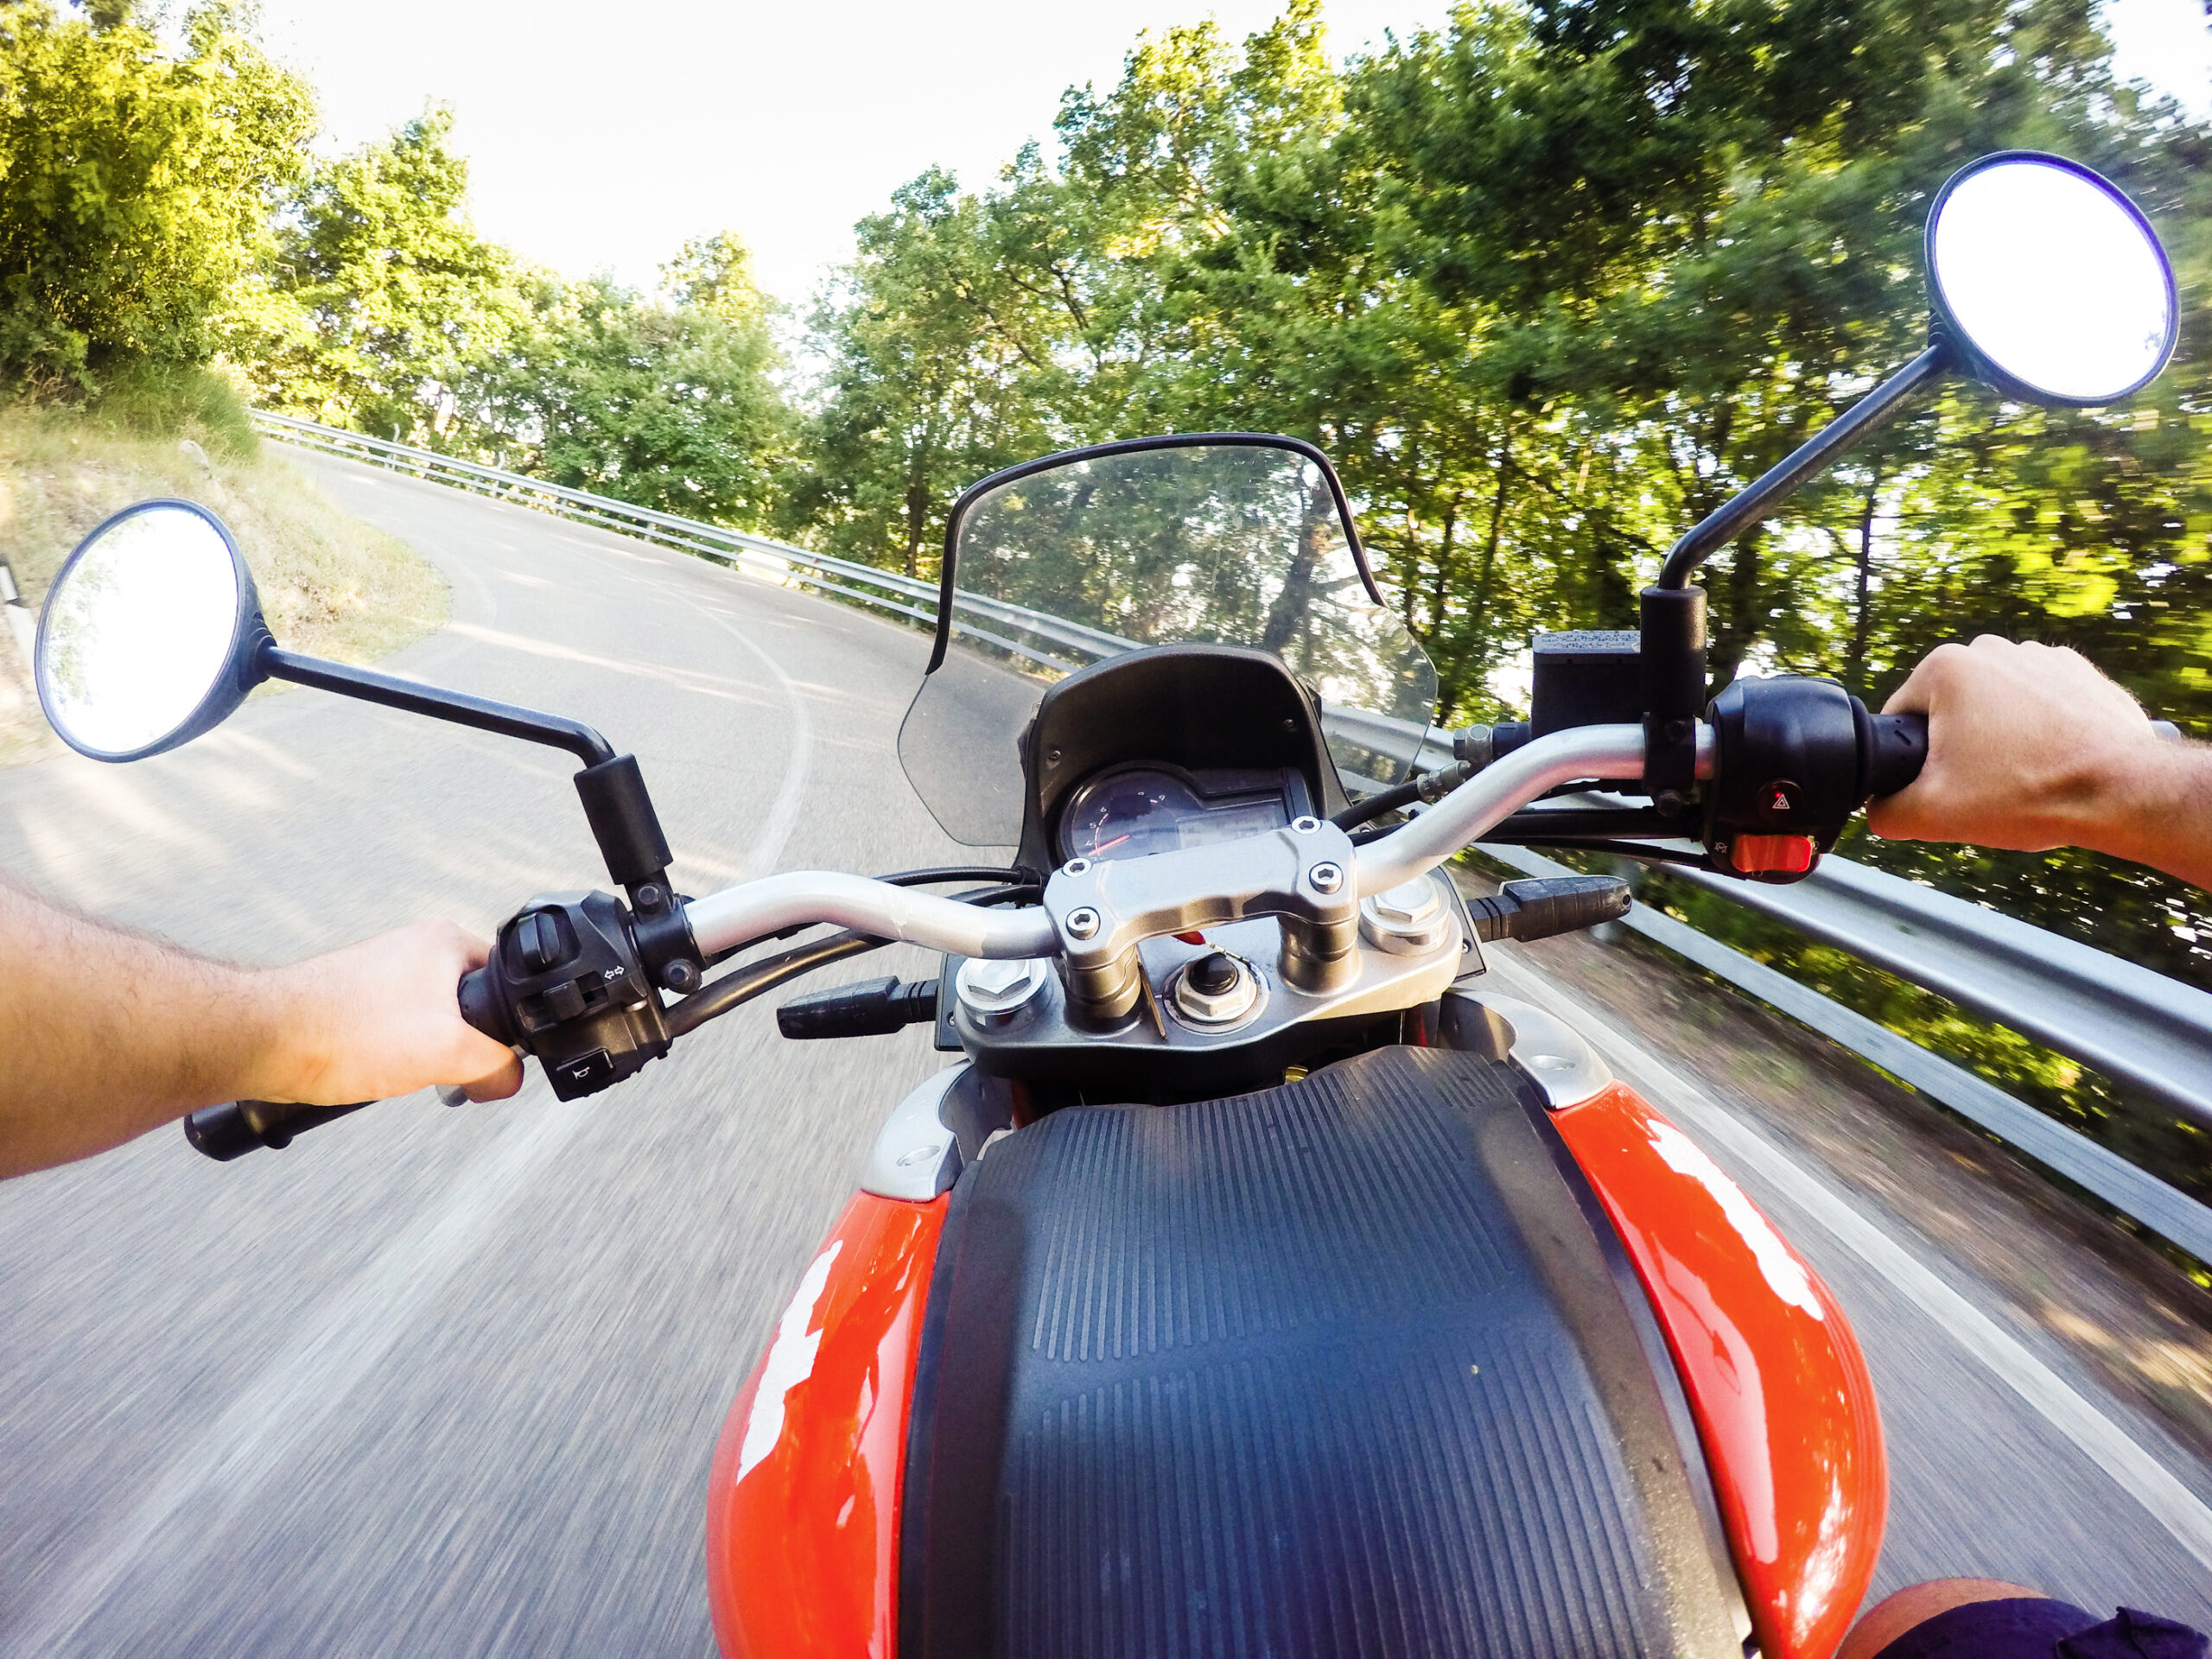 Llevar cámara en el casco de moto: ¿es legal?